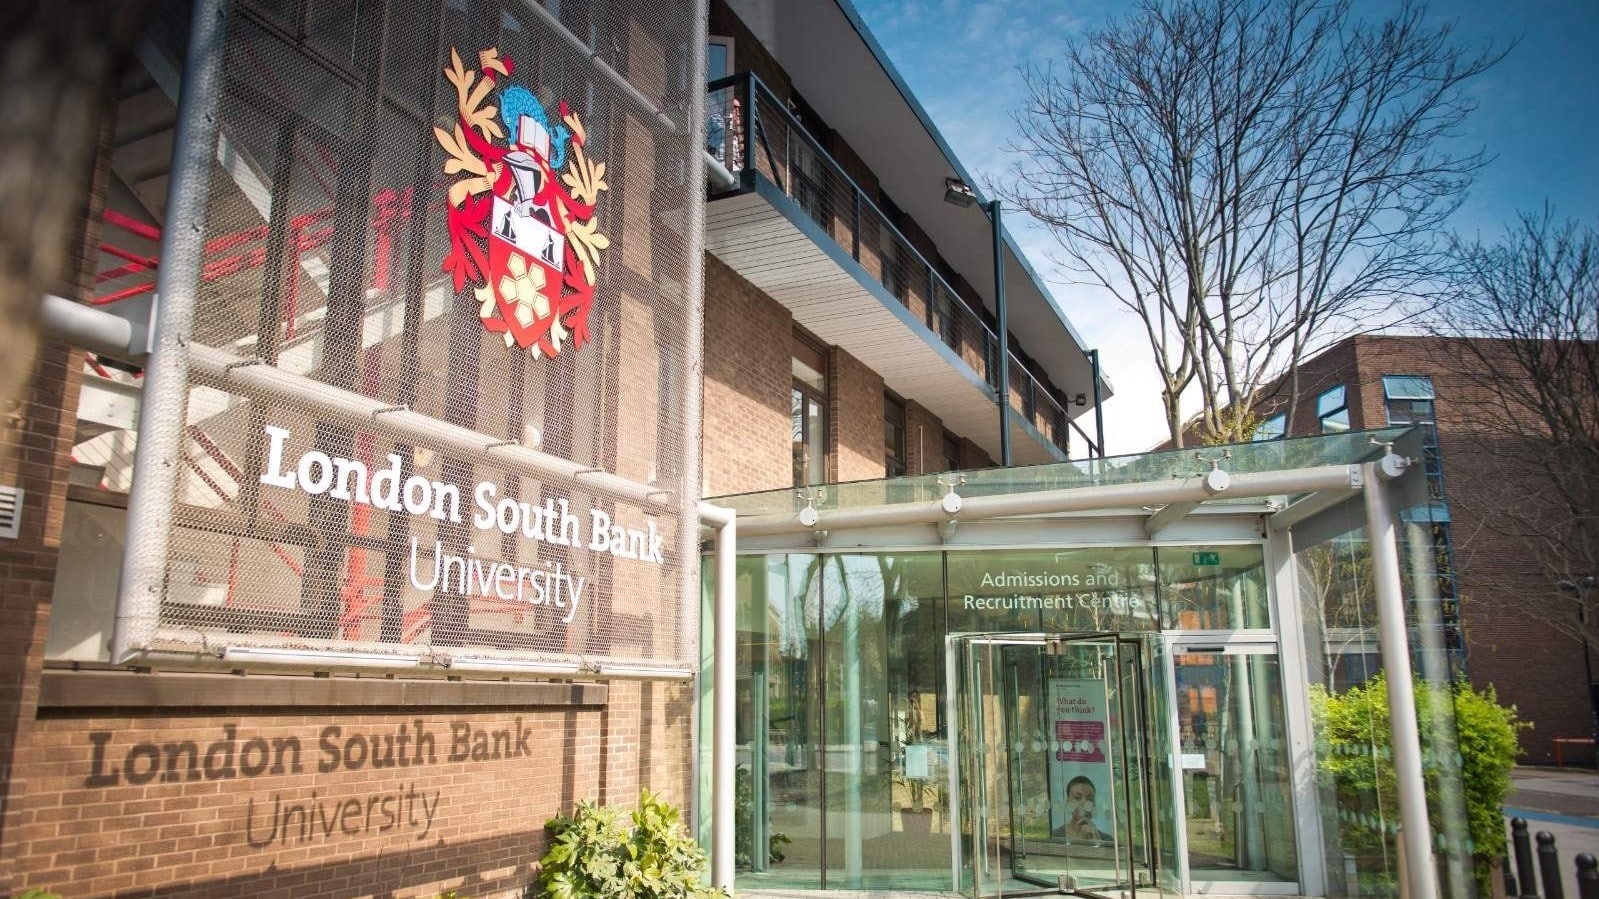 მიიღეთ ბრიტანული განათლება London South Bank University-ში!